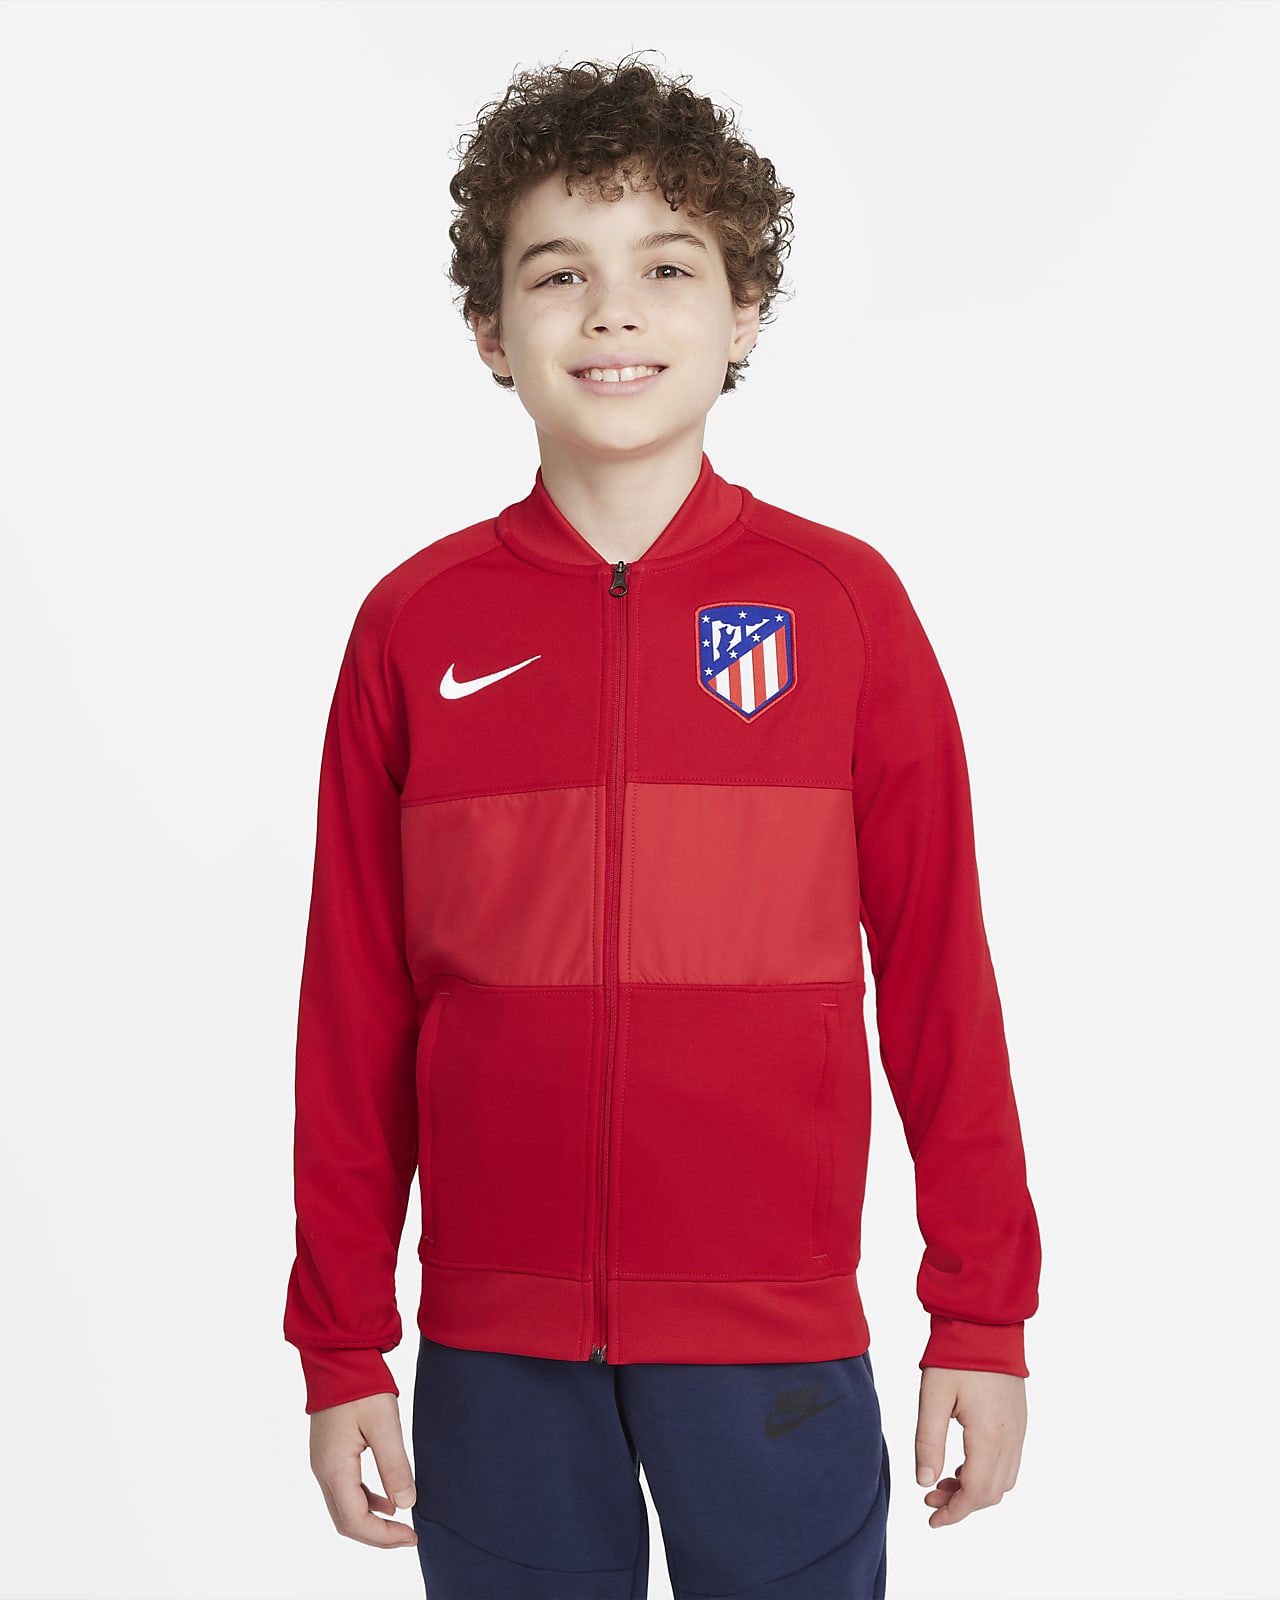 Fotbalová sportovní bunda Atlético Madrid se zipem po celé délce pro větší děti